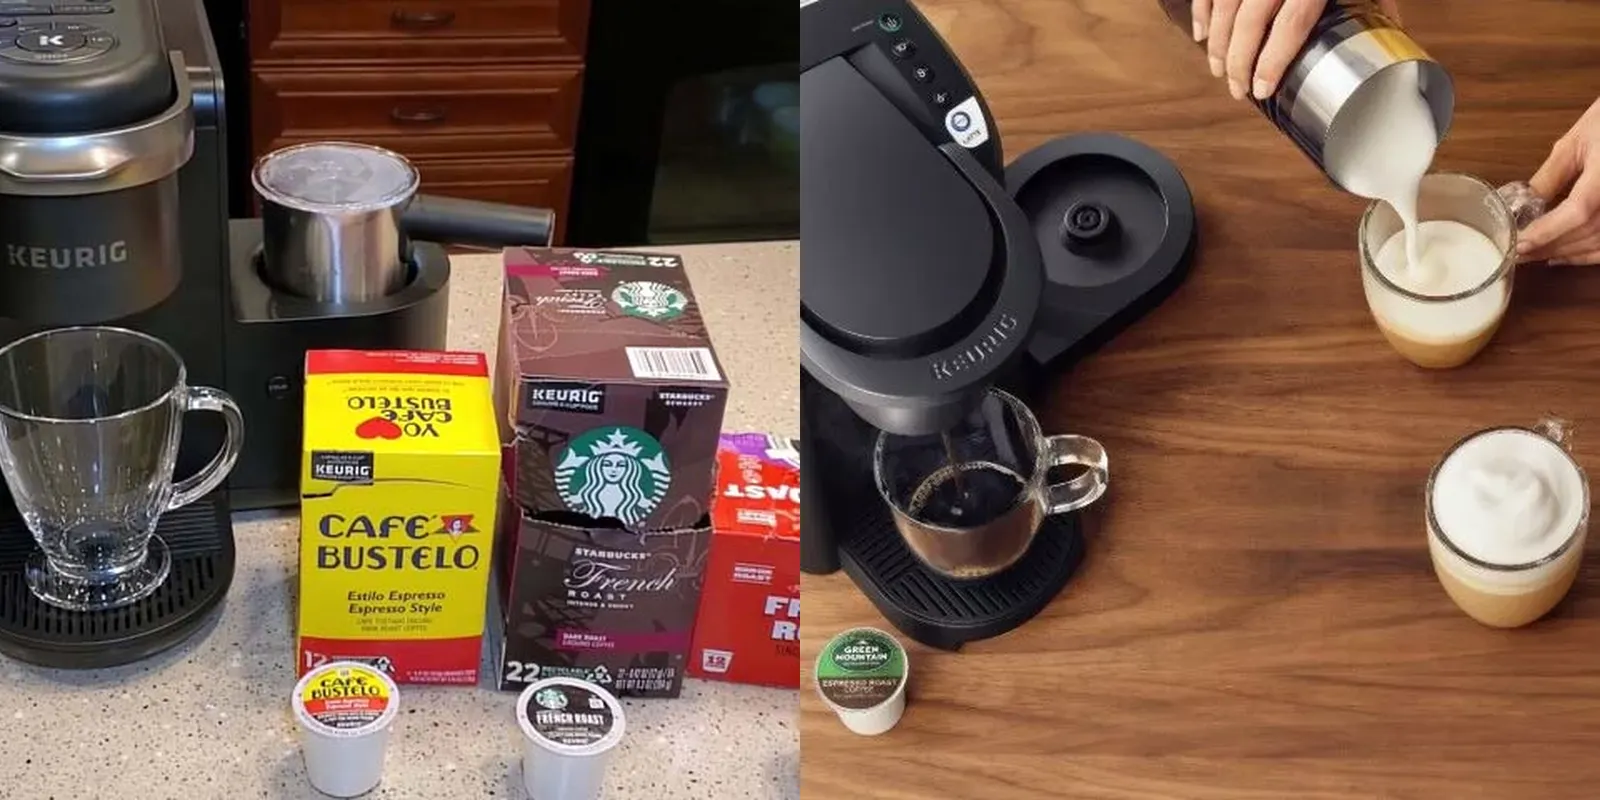 How To Make Espresso With Keurig